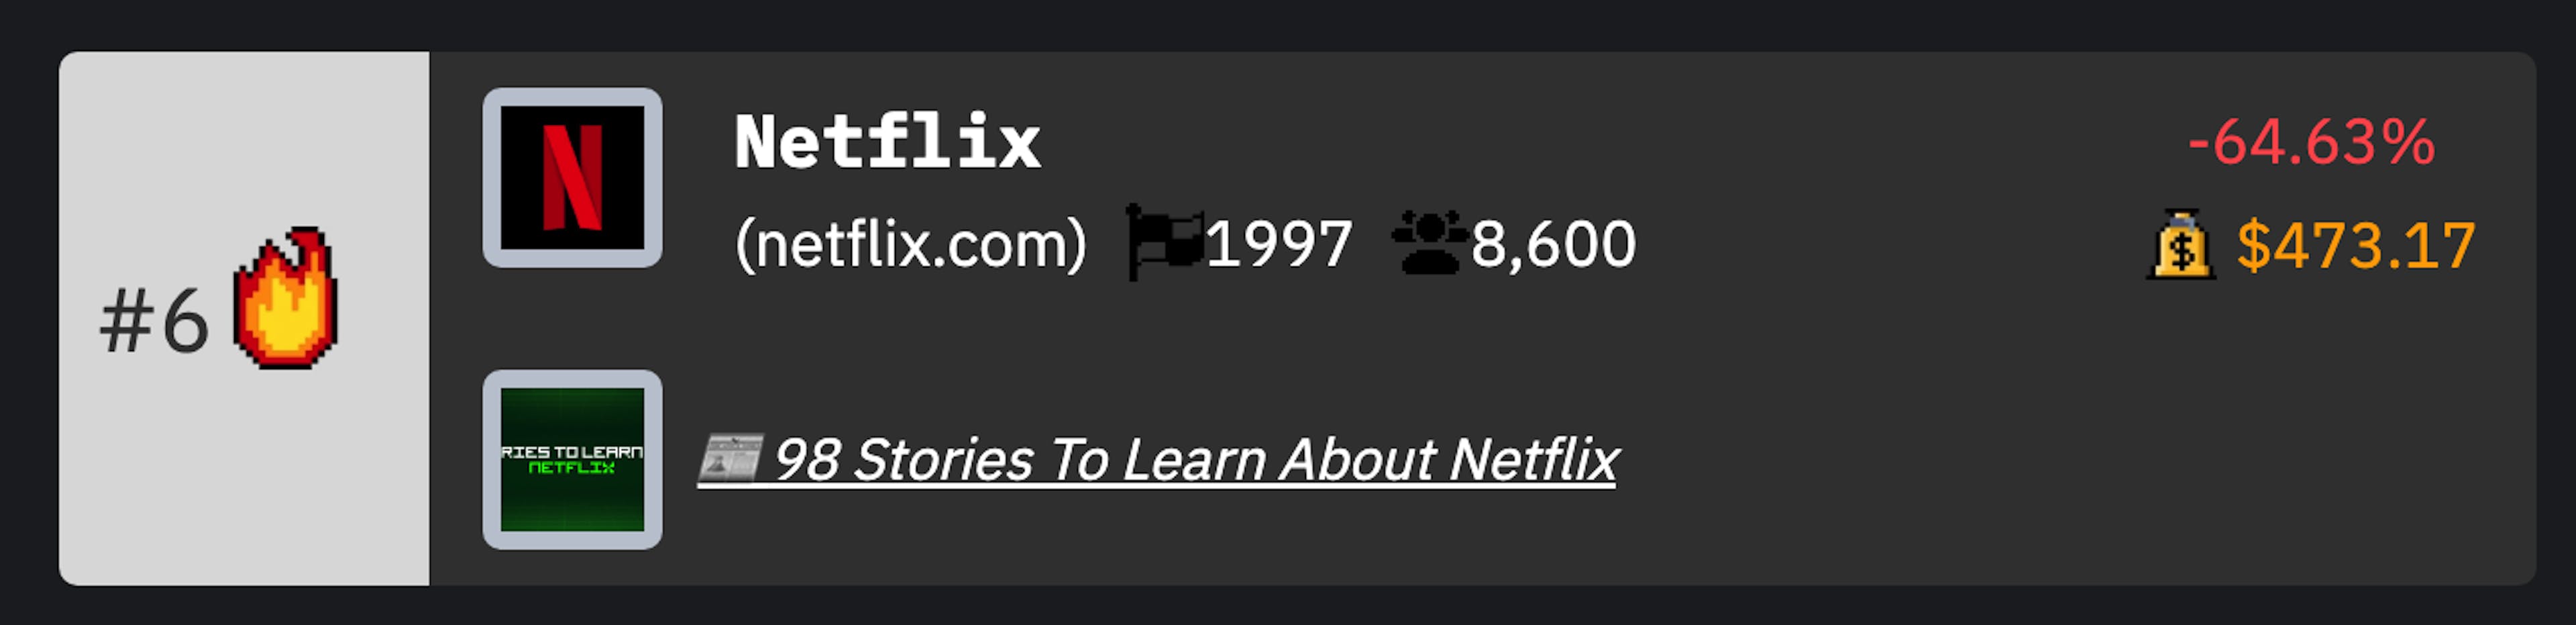 Netflix TCNB Ranking